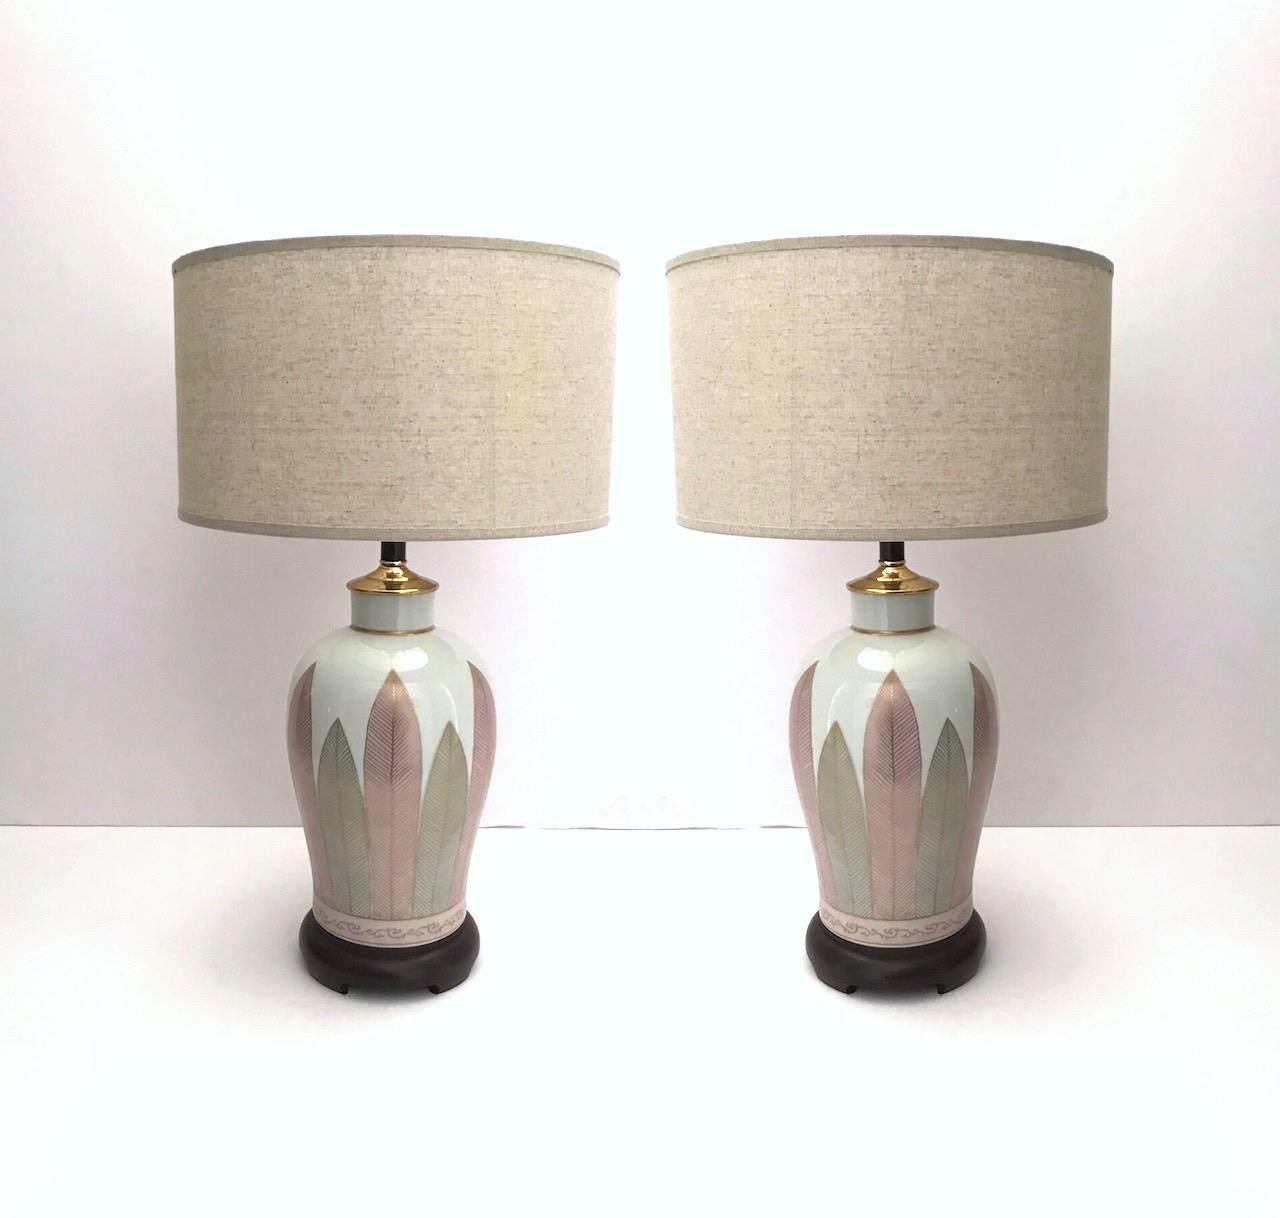 Paire de lampes en porcelaine japonaise, de style moderne du milieu du siècle, avec finition en glaçure blanche craquelée. Les lampes ont des formes d'urne élégantes avec des feuilles peintes à la main dans des teintes alternées de rose et de gris,